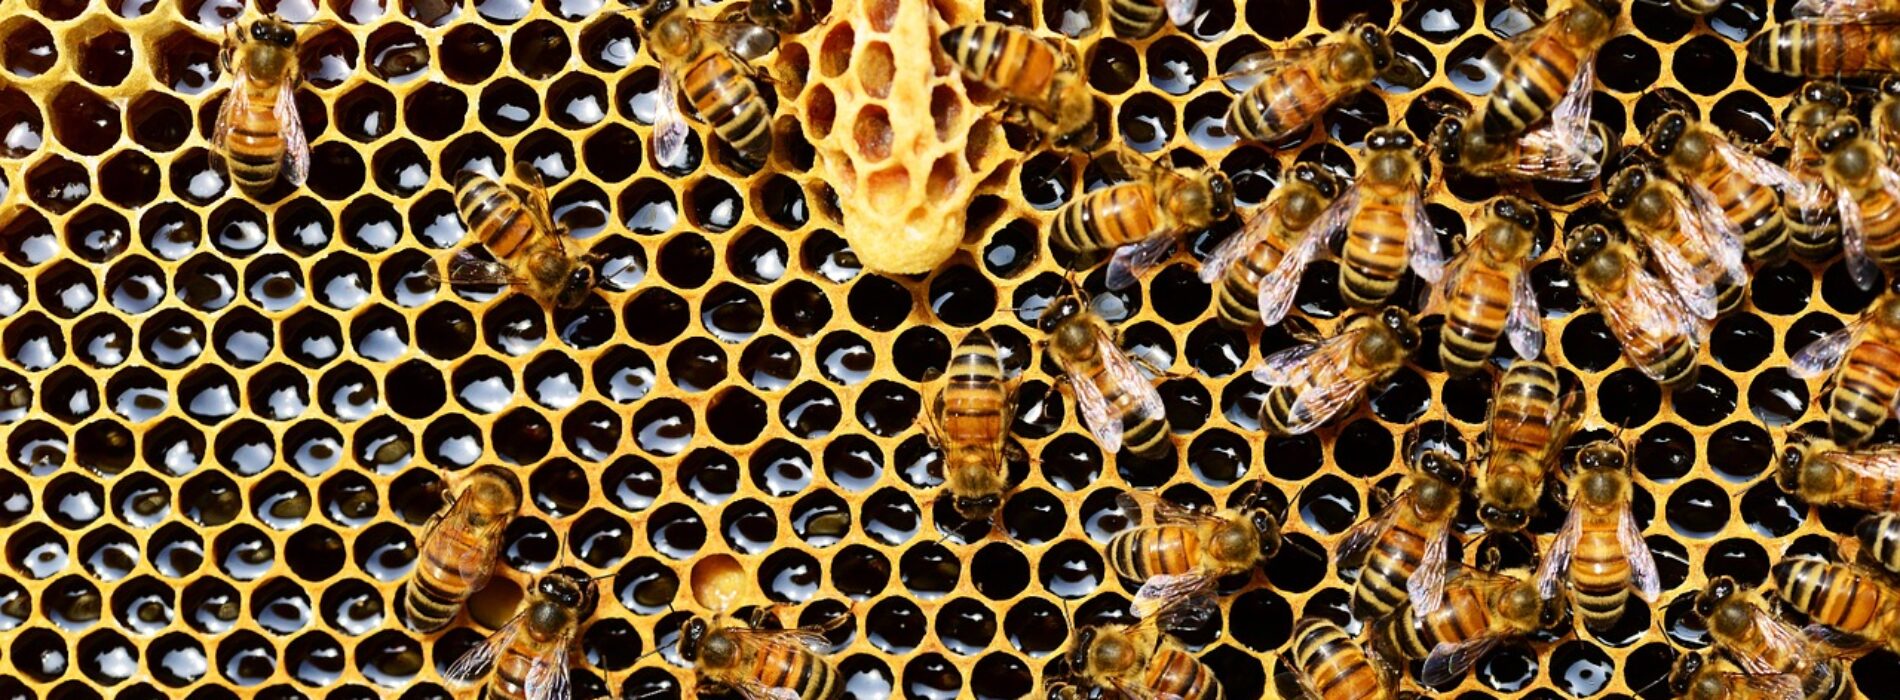 Bezpłatne szkolenia z zakresu pszczelarstwa